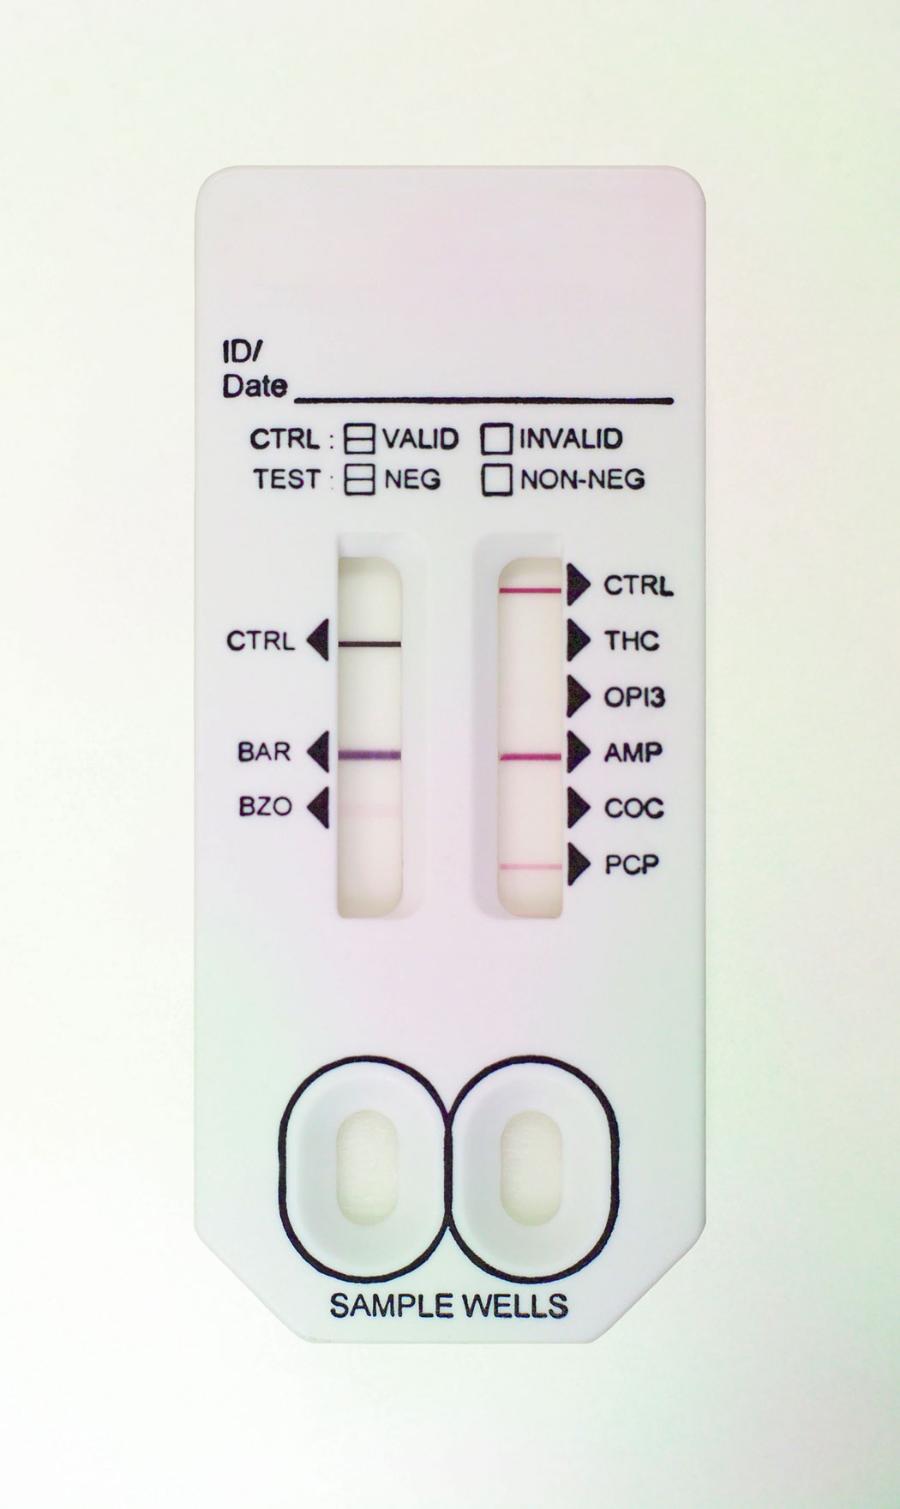 Siedmiominutowy szybki test wykrywający narkotyki (barbiturany, benzodiazepiny, kannabinoidy, opiaty, amfetaminę, kokainę i fencyklidynę).